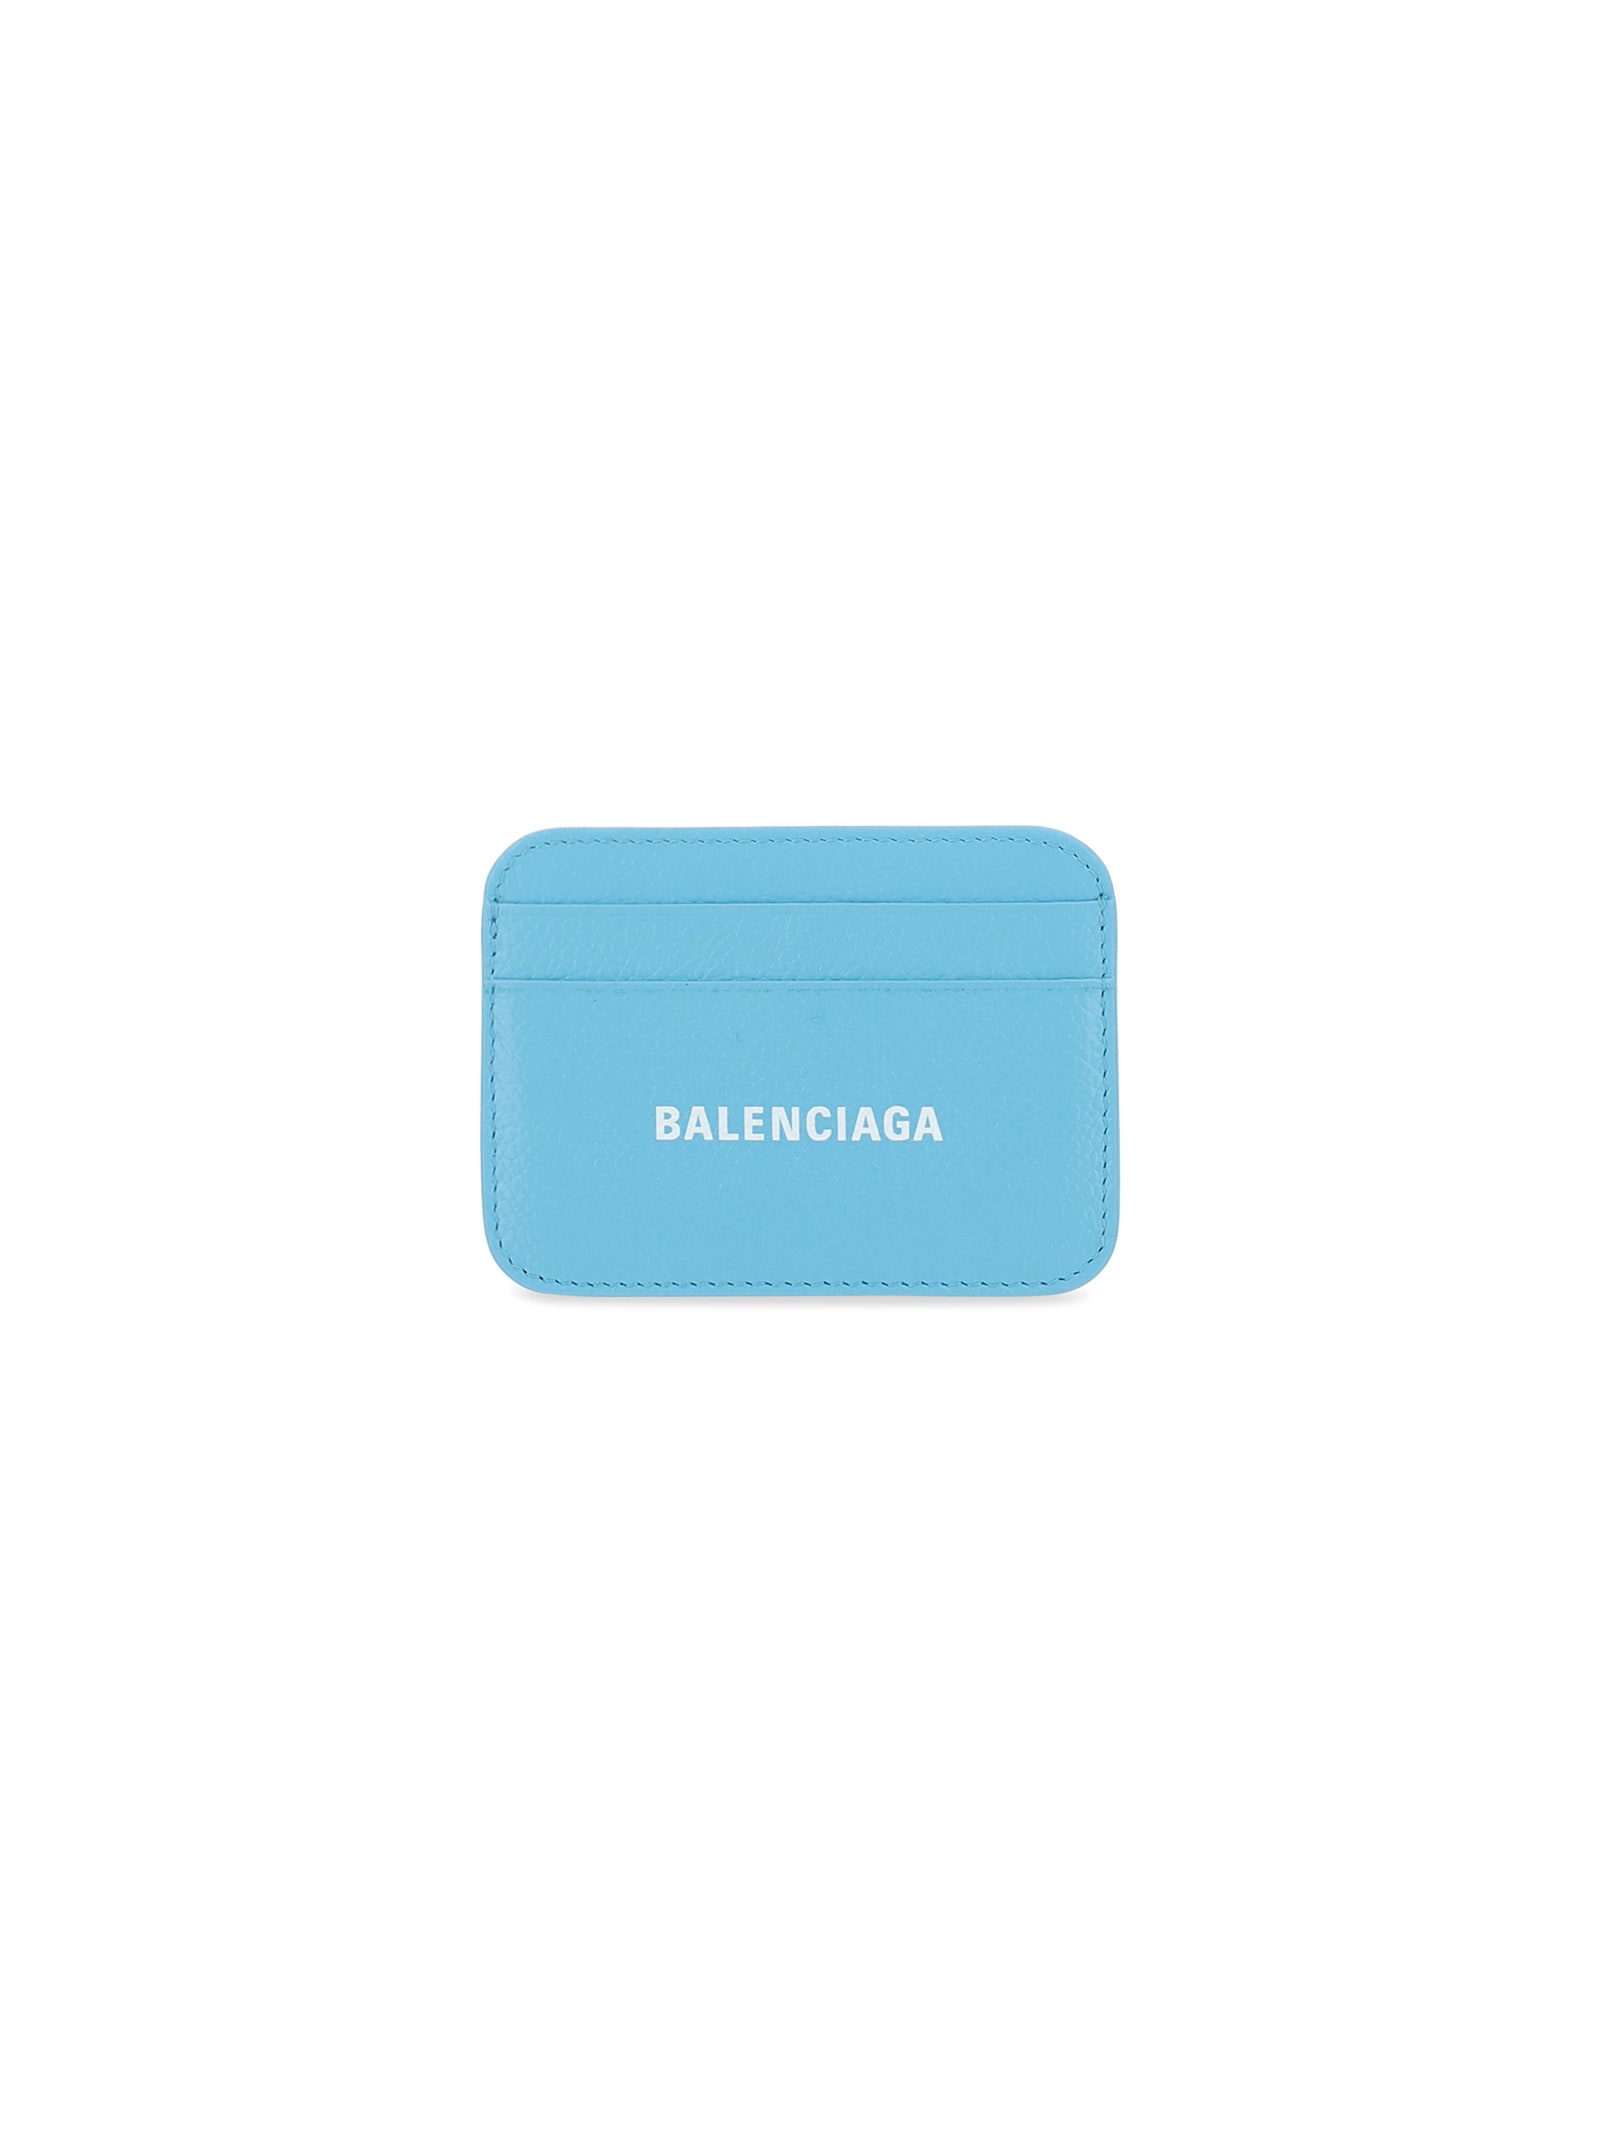 BALENCIAGA CARD HOLDER,11818141